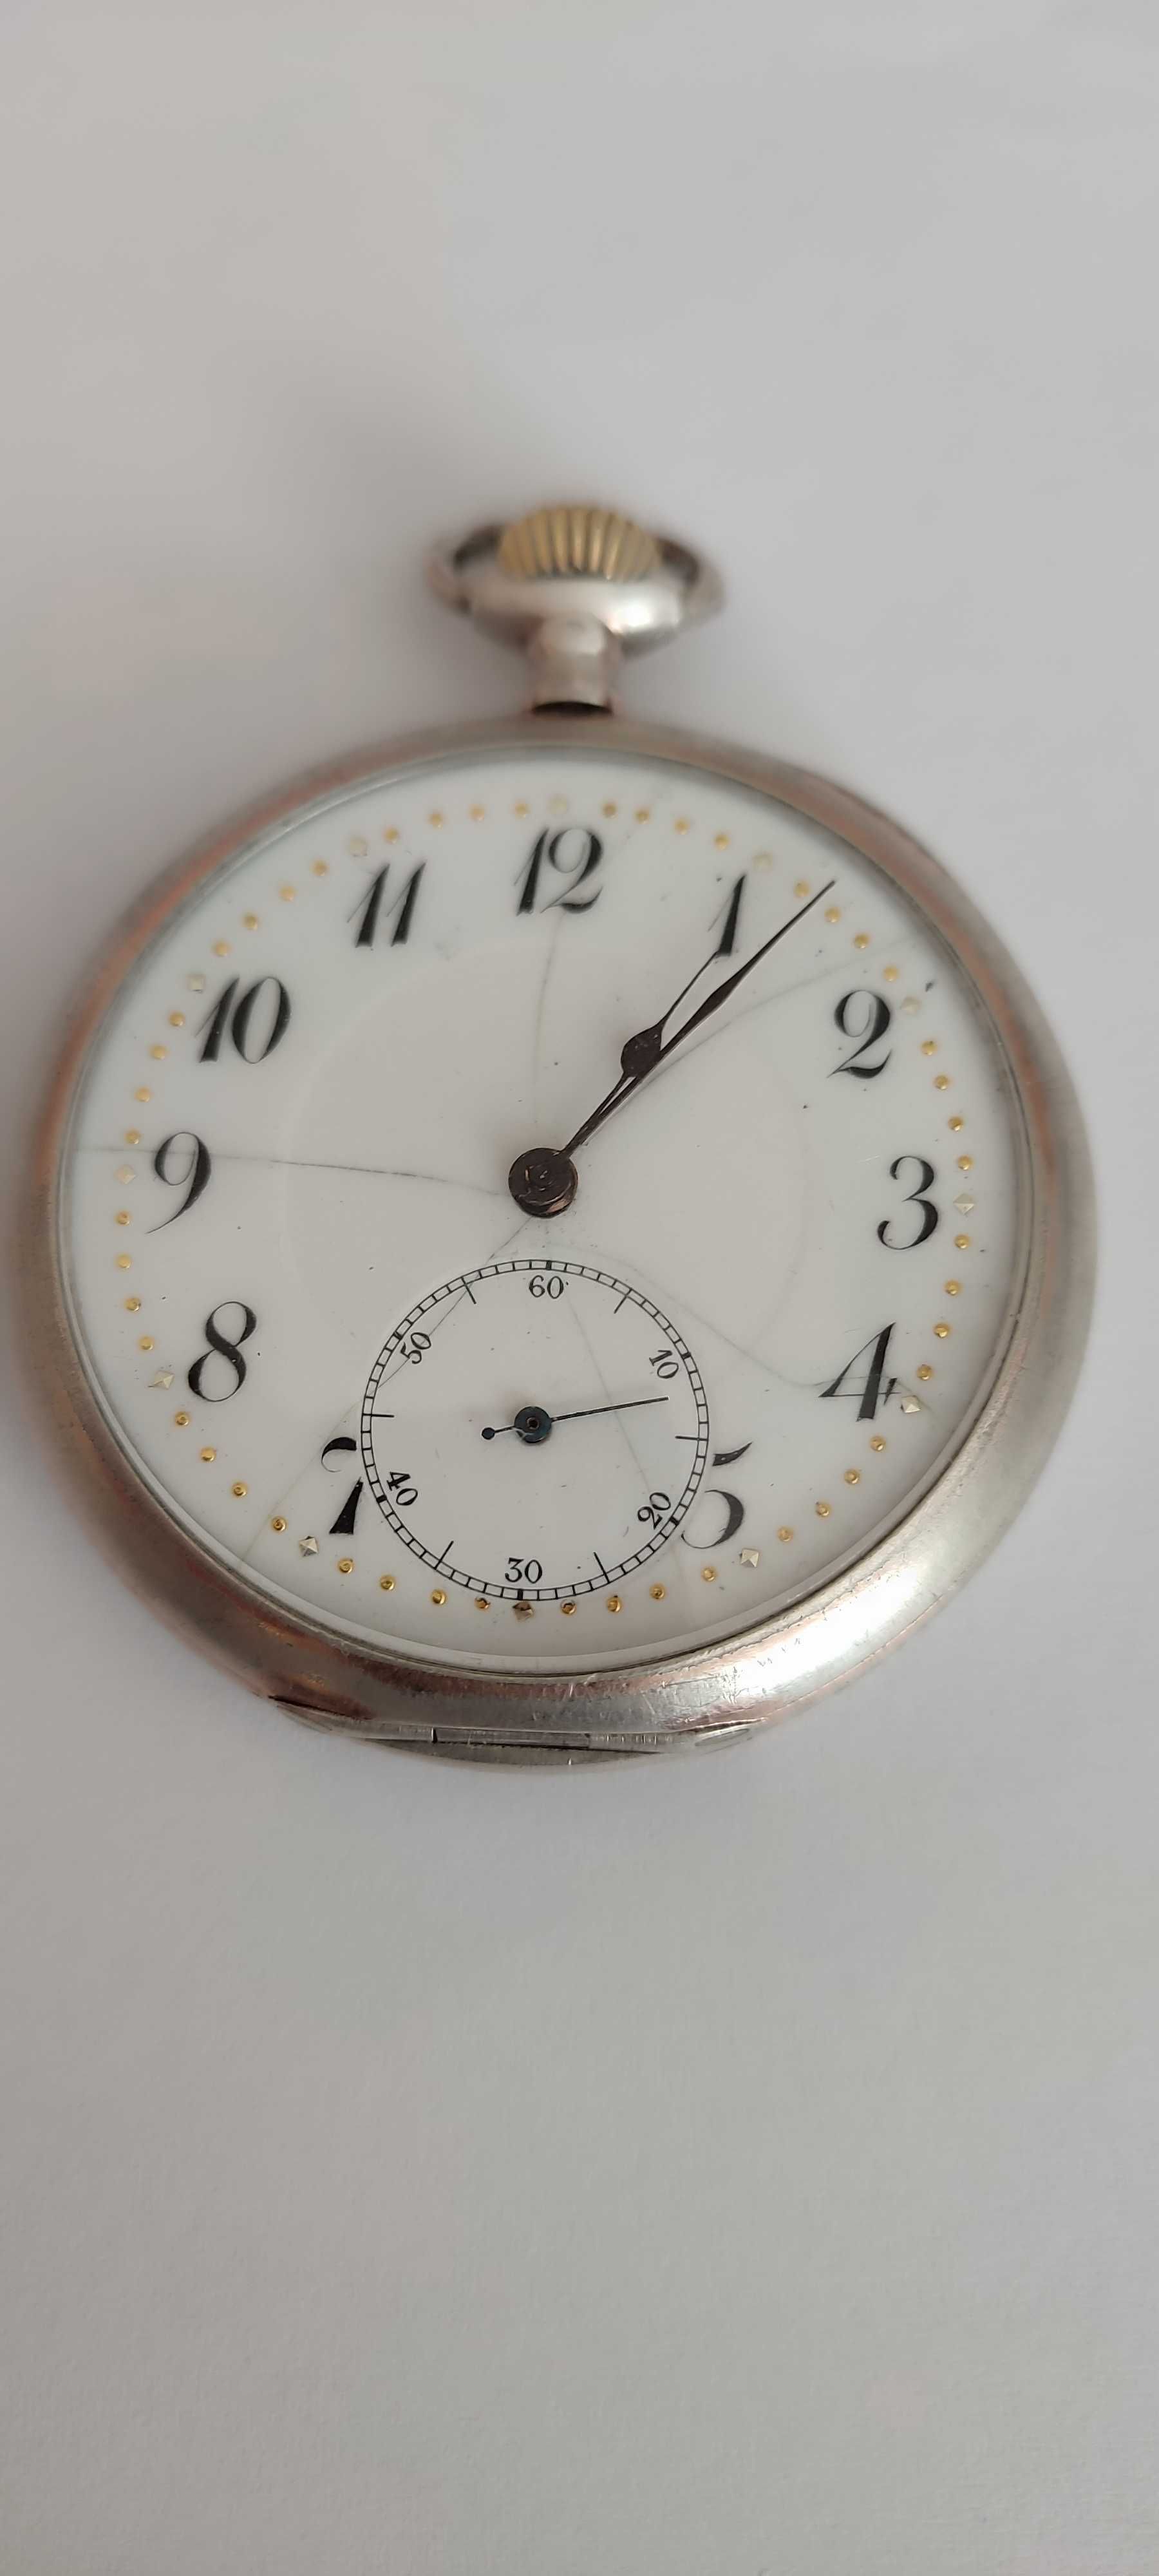 Zegarek kieszonkowy srebrny pr, 0-800sprawny